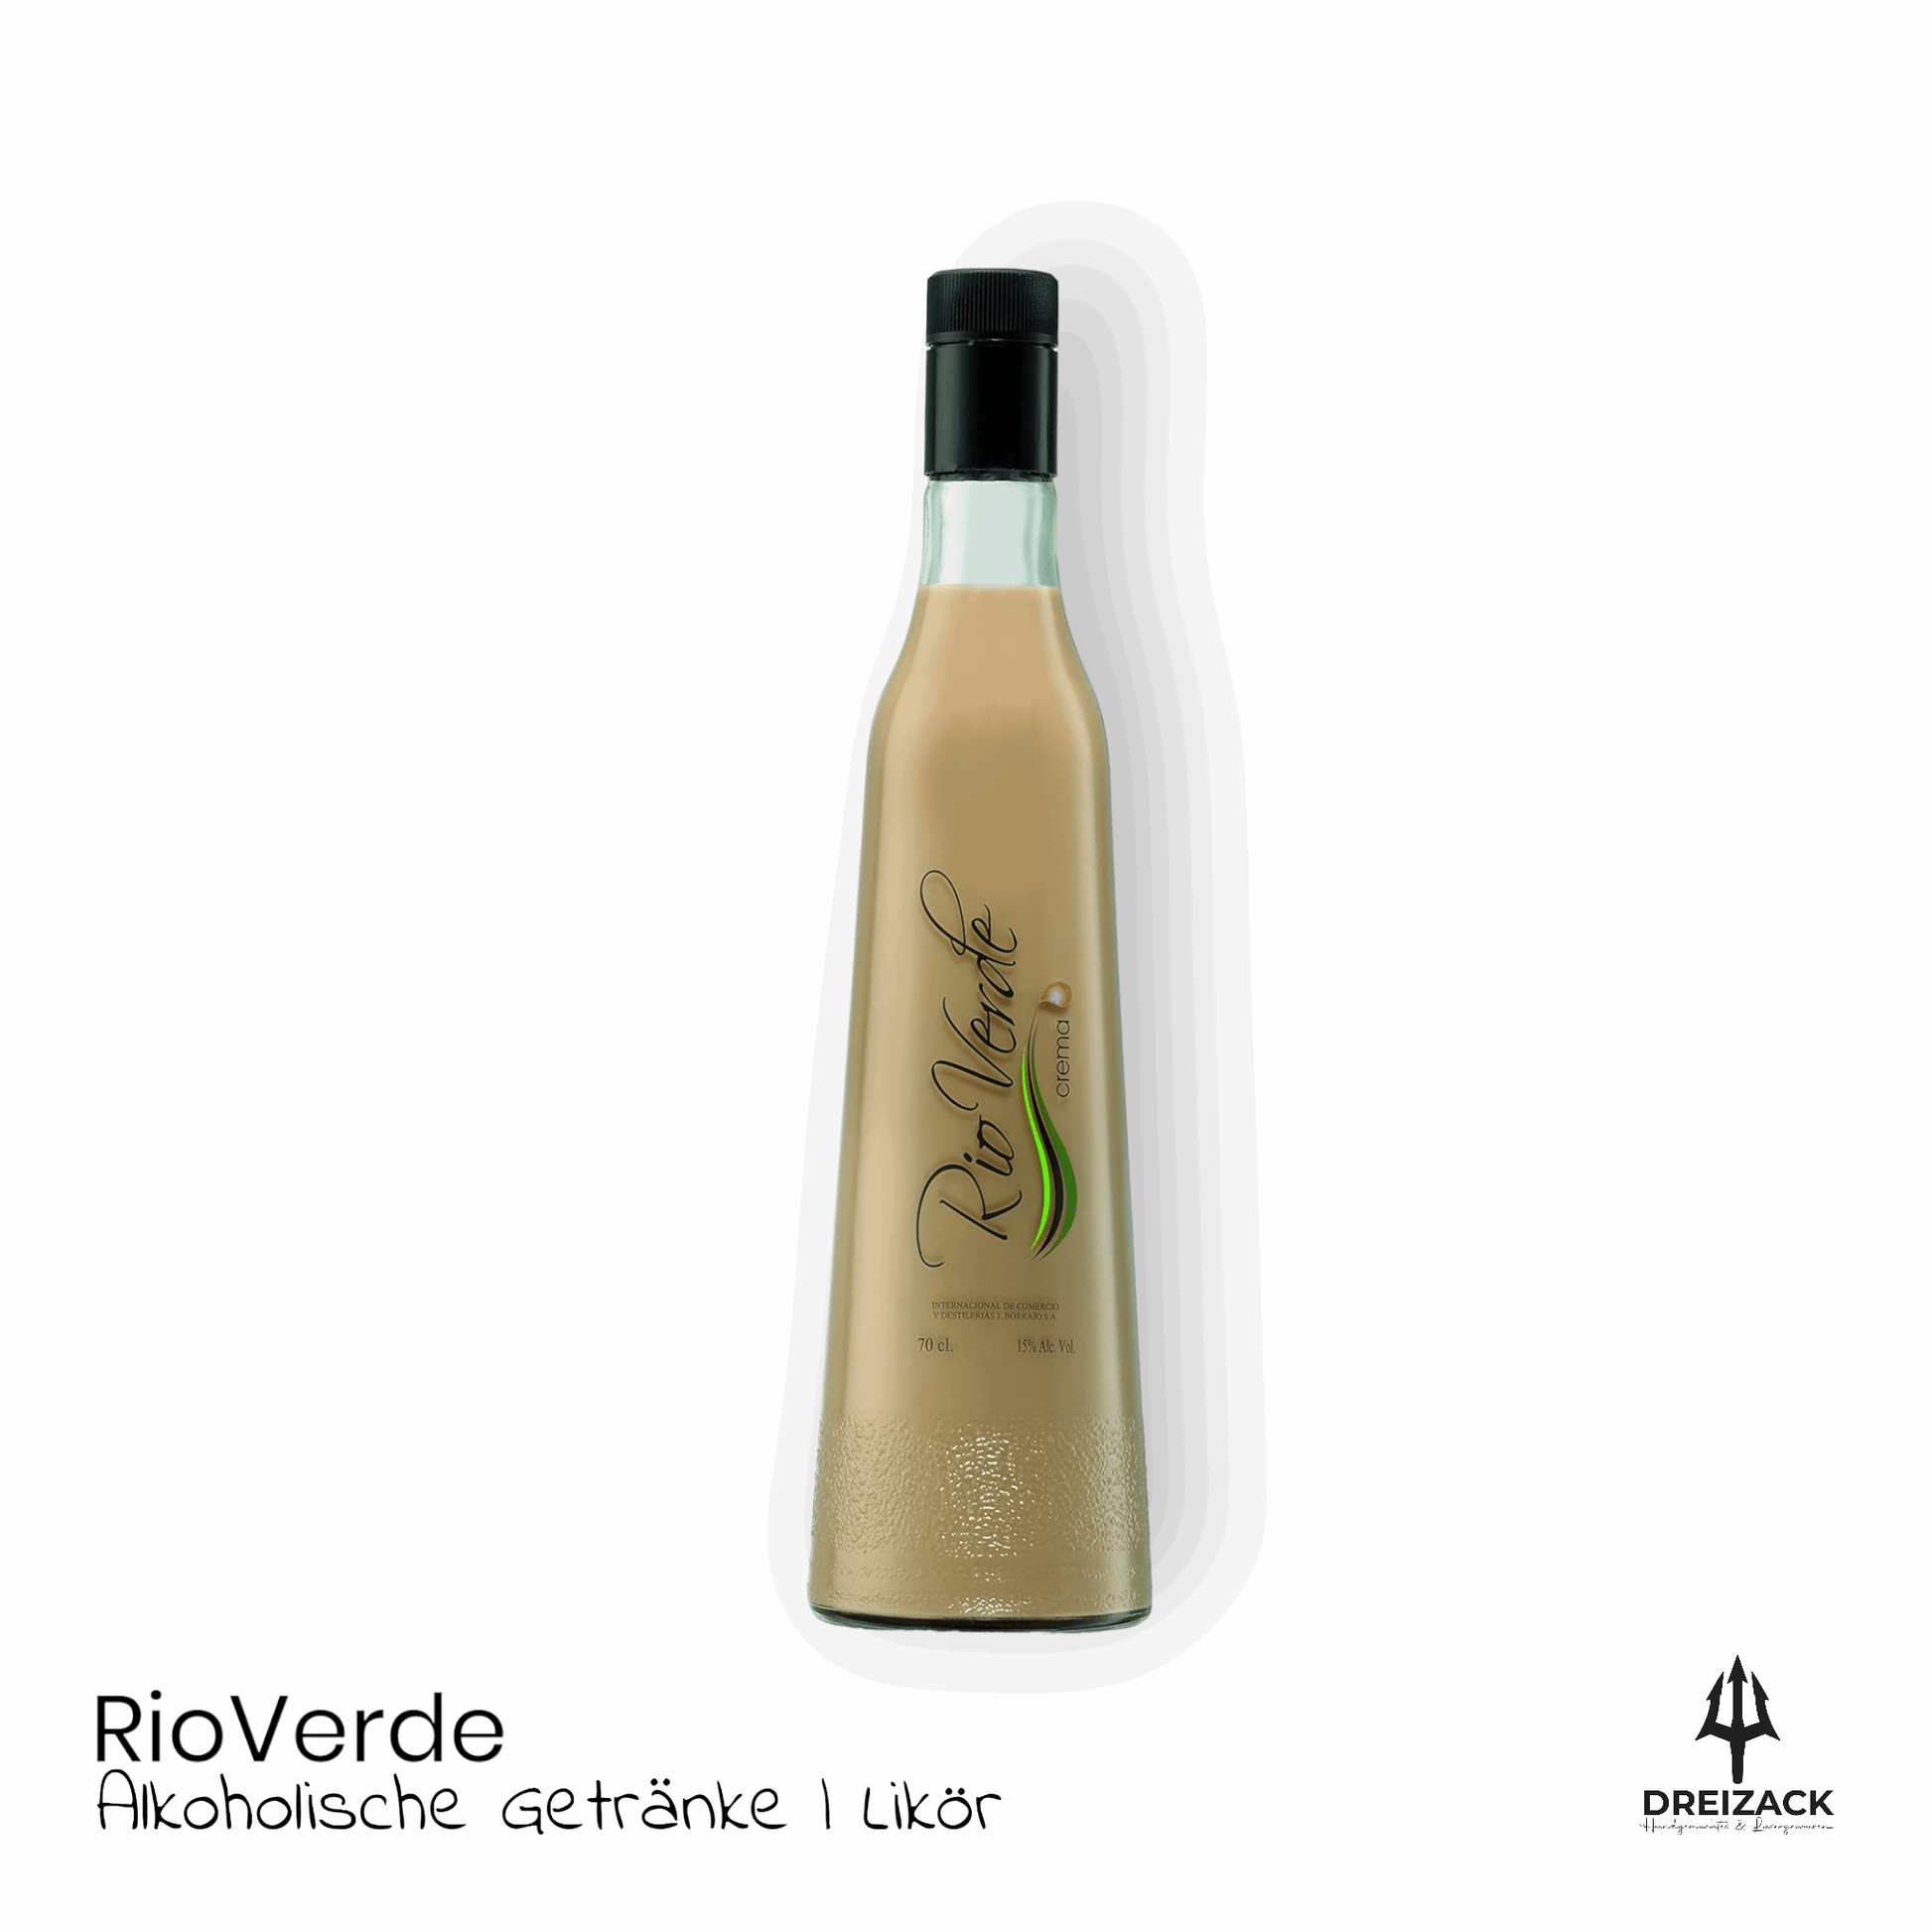 Rio Verde | Arroz con Leche & Crema - Milchreis Likör für heimelige Momente Alkoholische Getränke Dreizack oesterreich handgemachte geschenke in wien